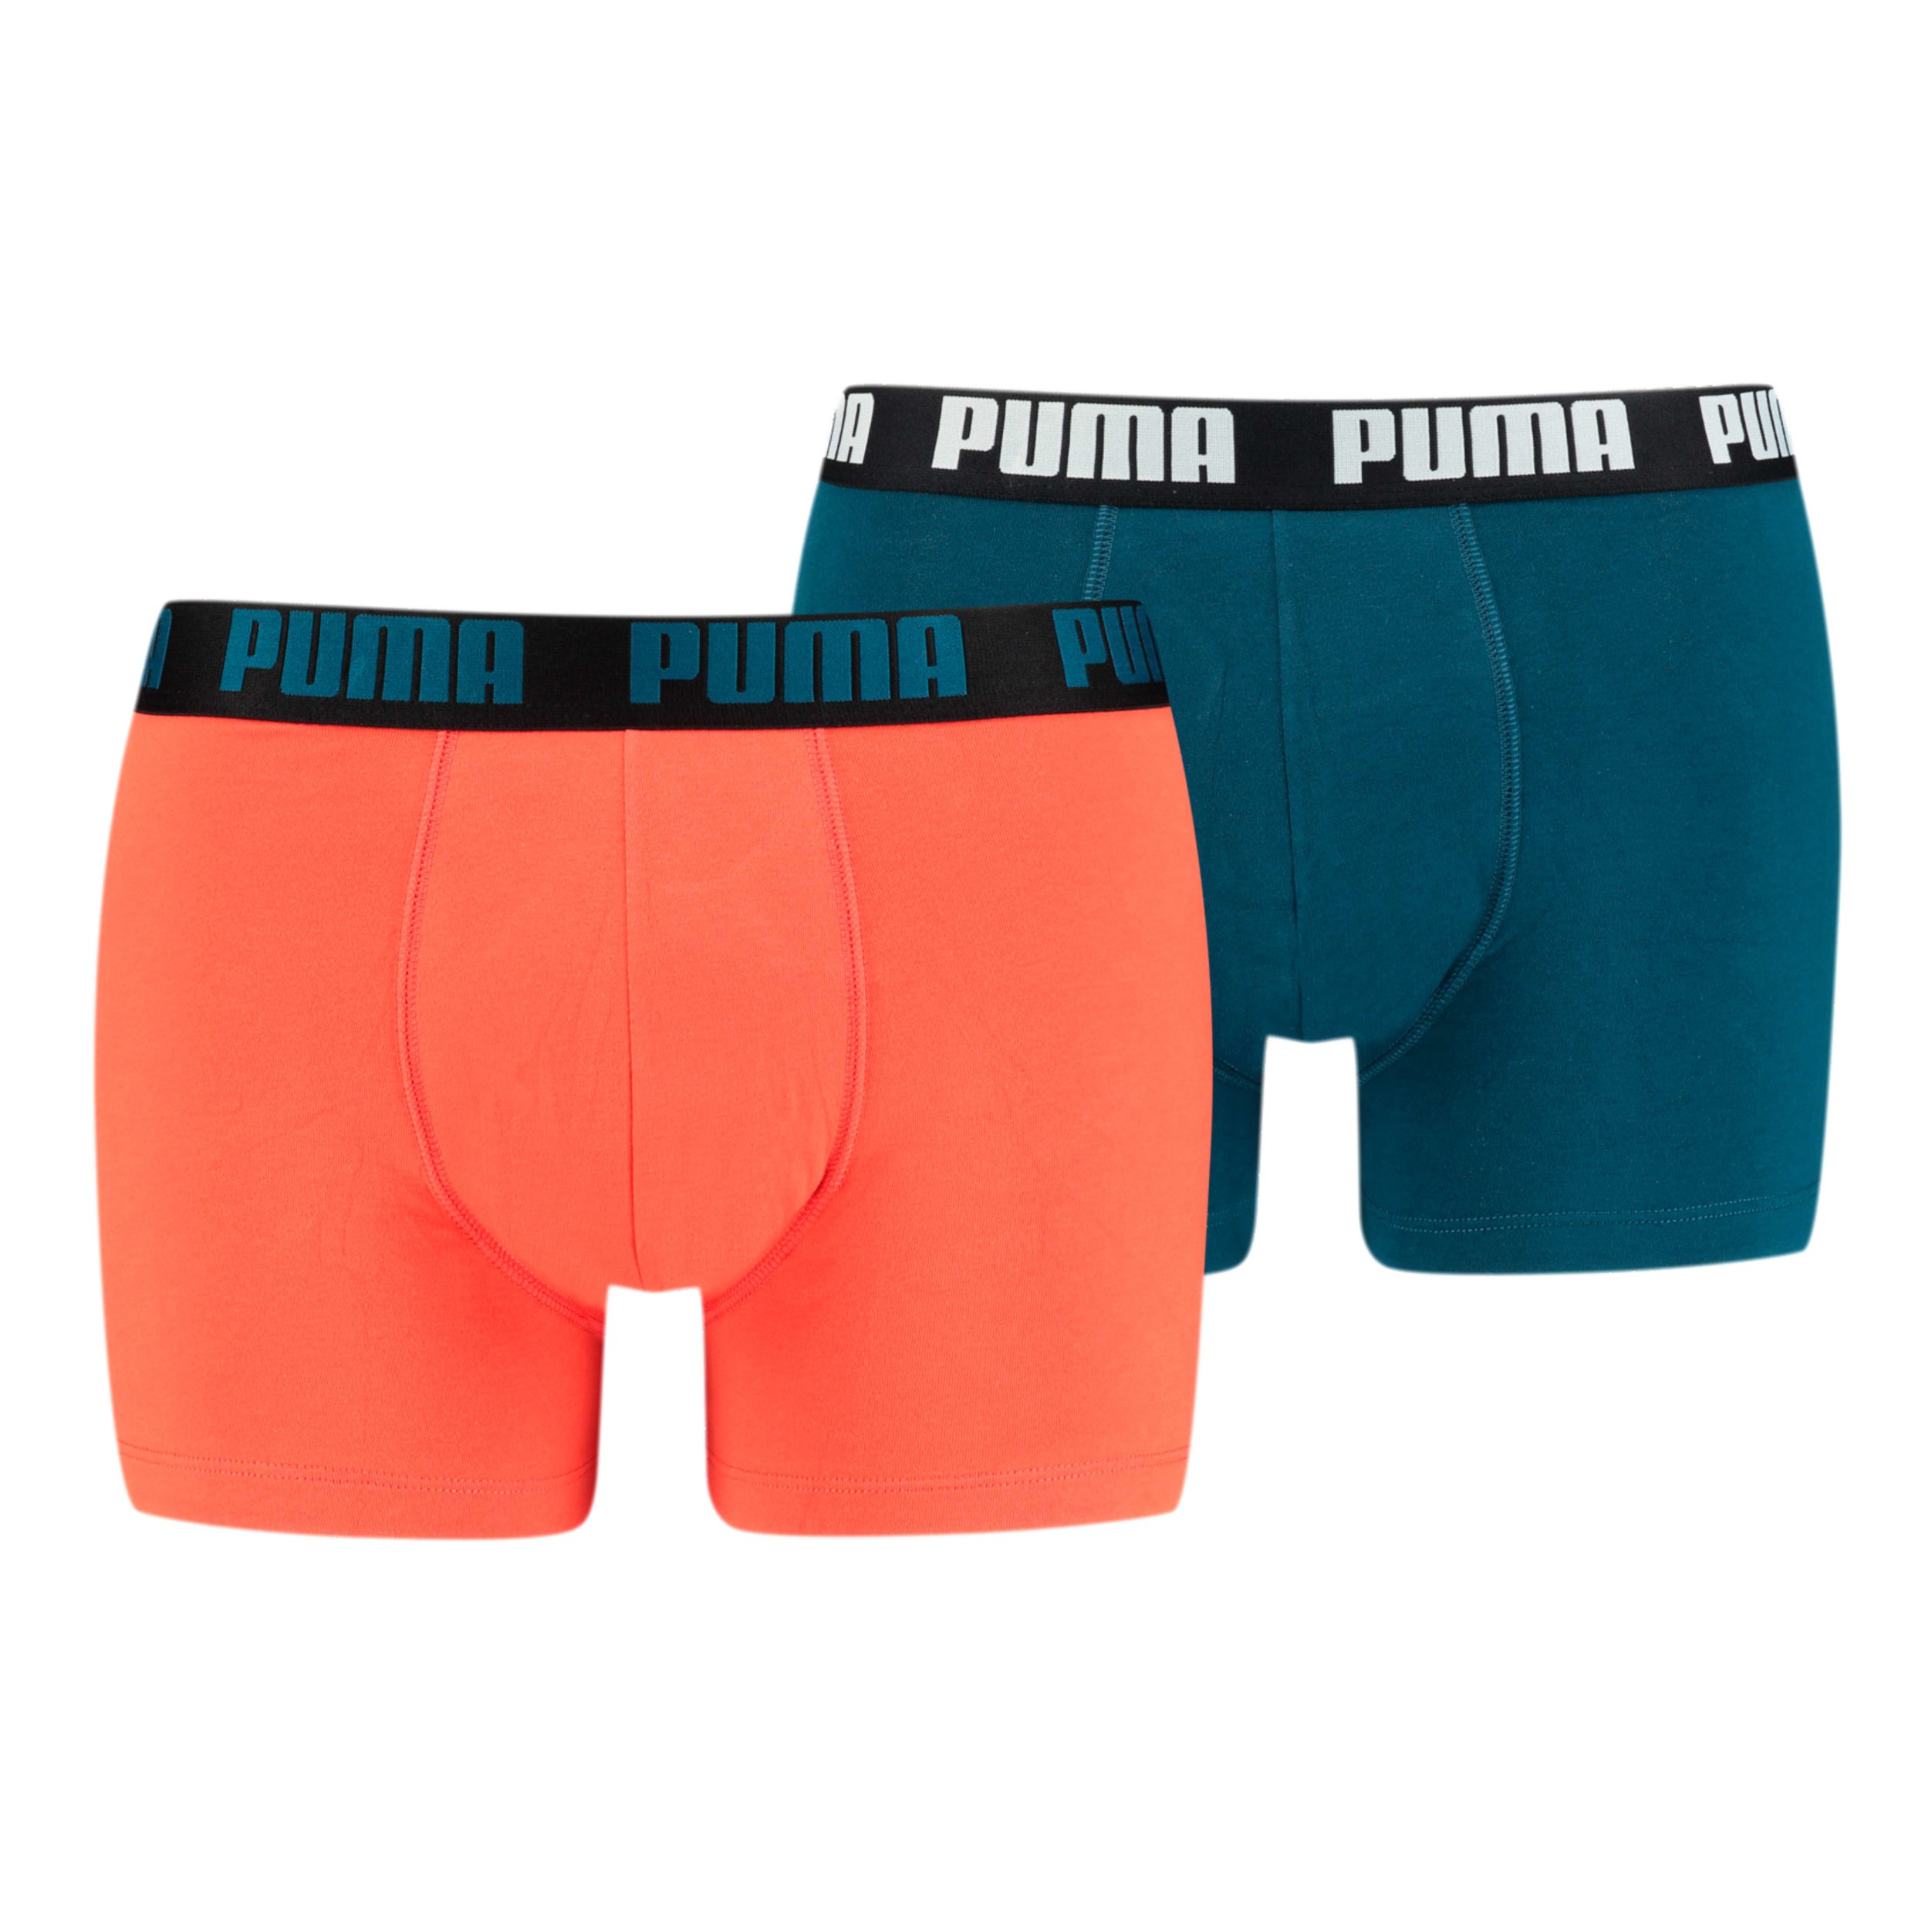 قهوة كوستاريكا Boxer Basic - red and blue (Lot of 2): Packs for man brand Puma for... قهوة كوستاريكا